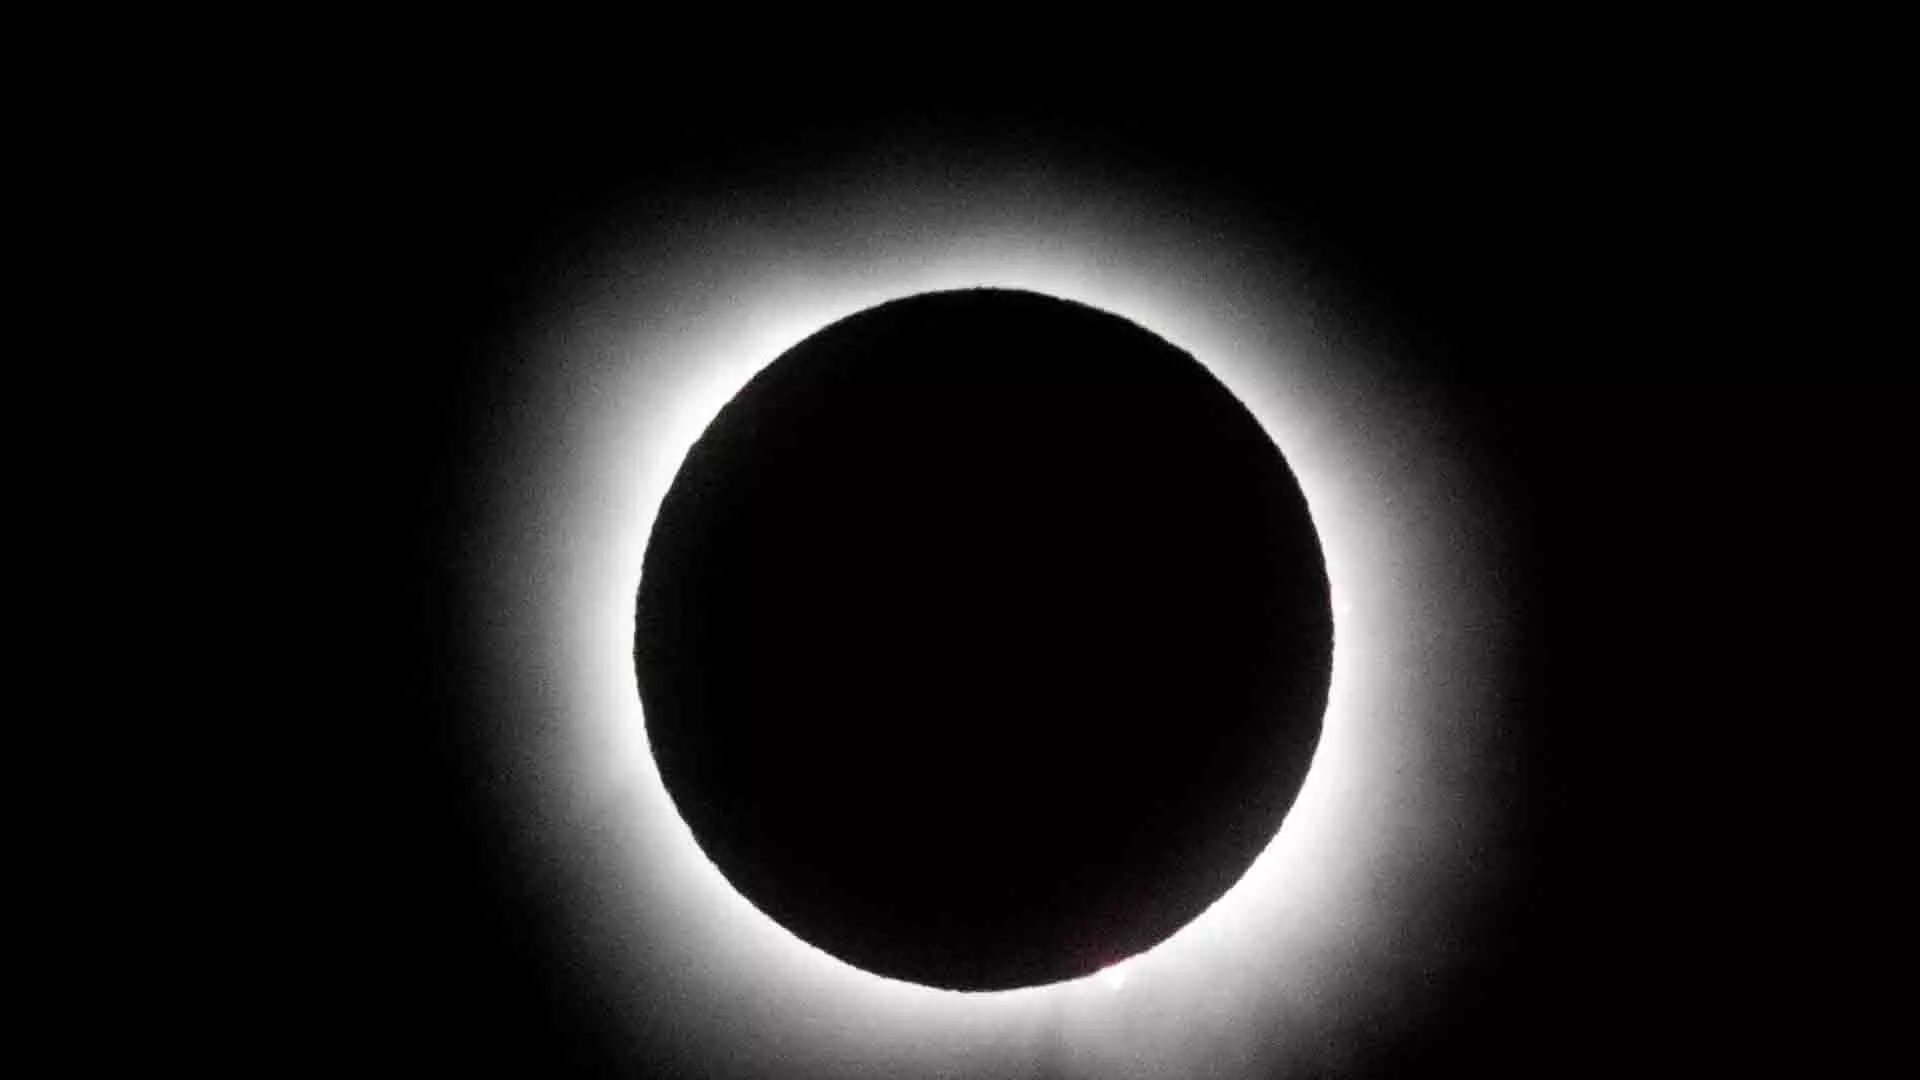 अगला पूर्ण सूर्य ग्रहण 2026 में, अमेरिका में 2044 तक दूसरा सूर्य ग्रहण नहीं दिखेगा